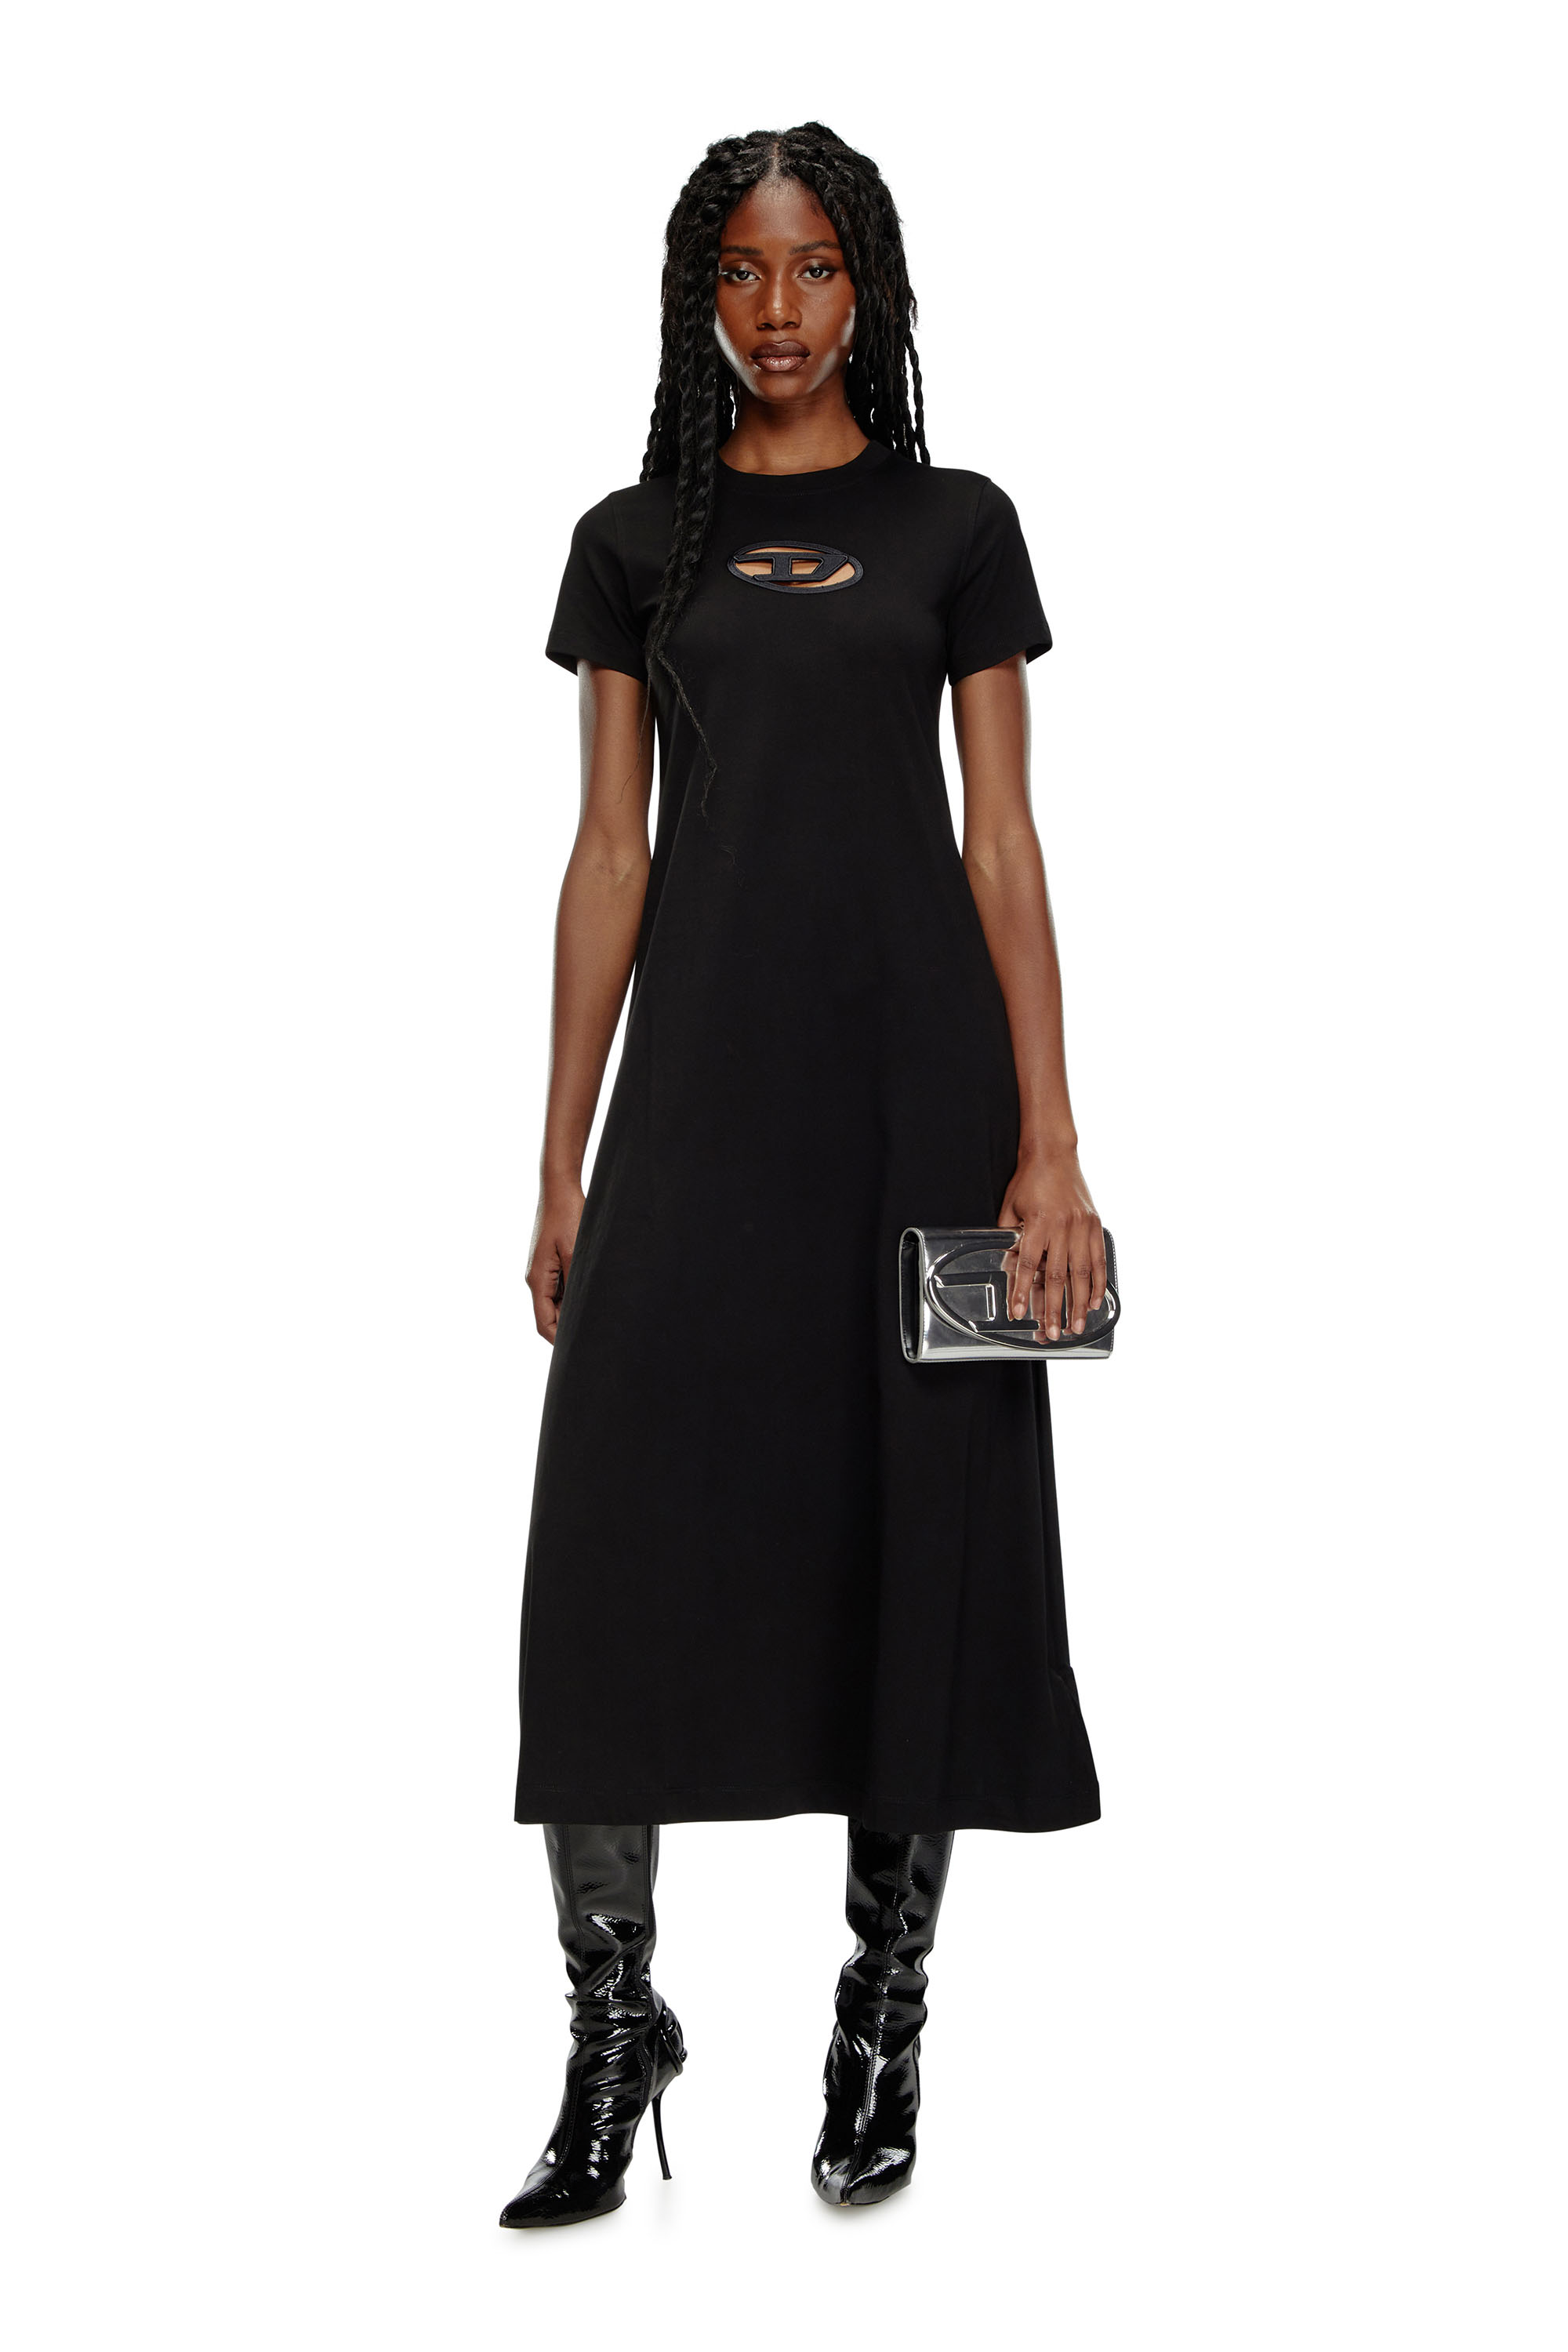 Diesel - D-ALIN-OD, Mujer Vestido camiseta con D bordada in Negro - Image 2